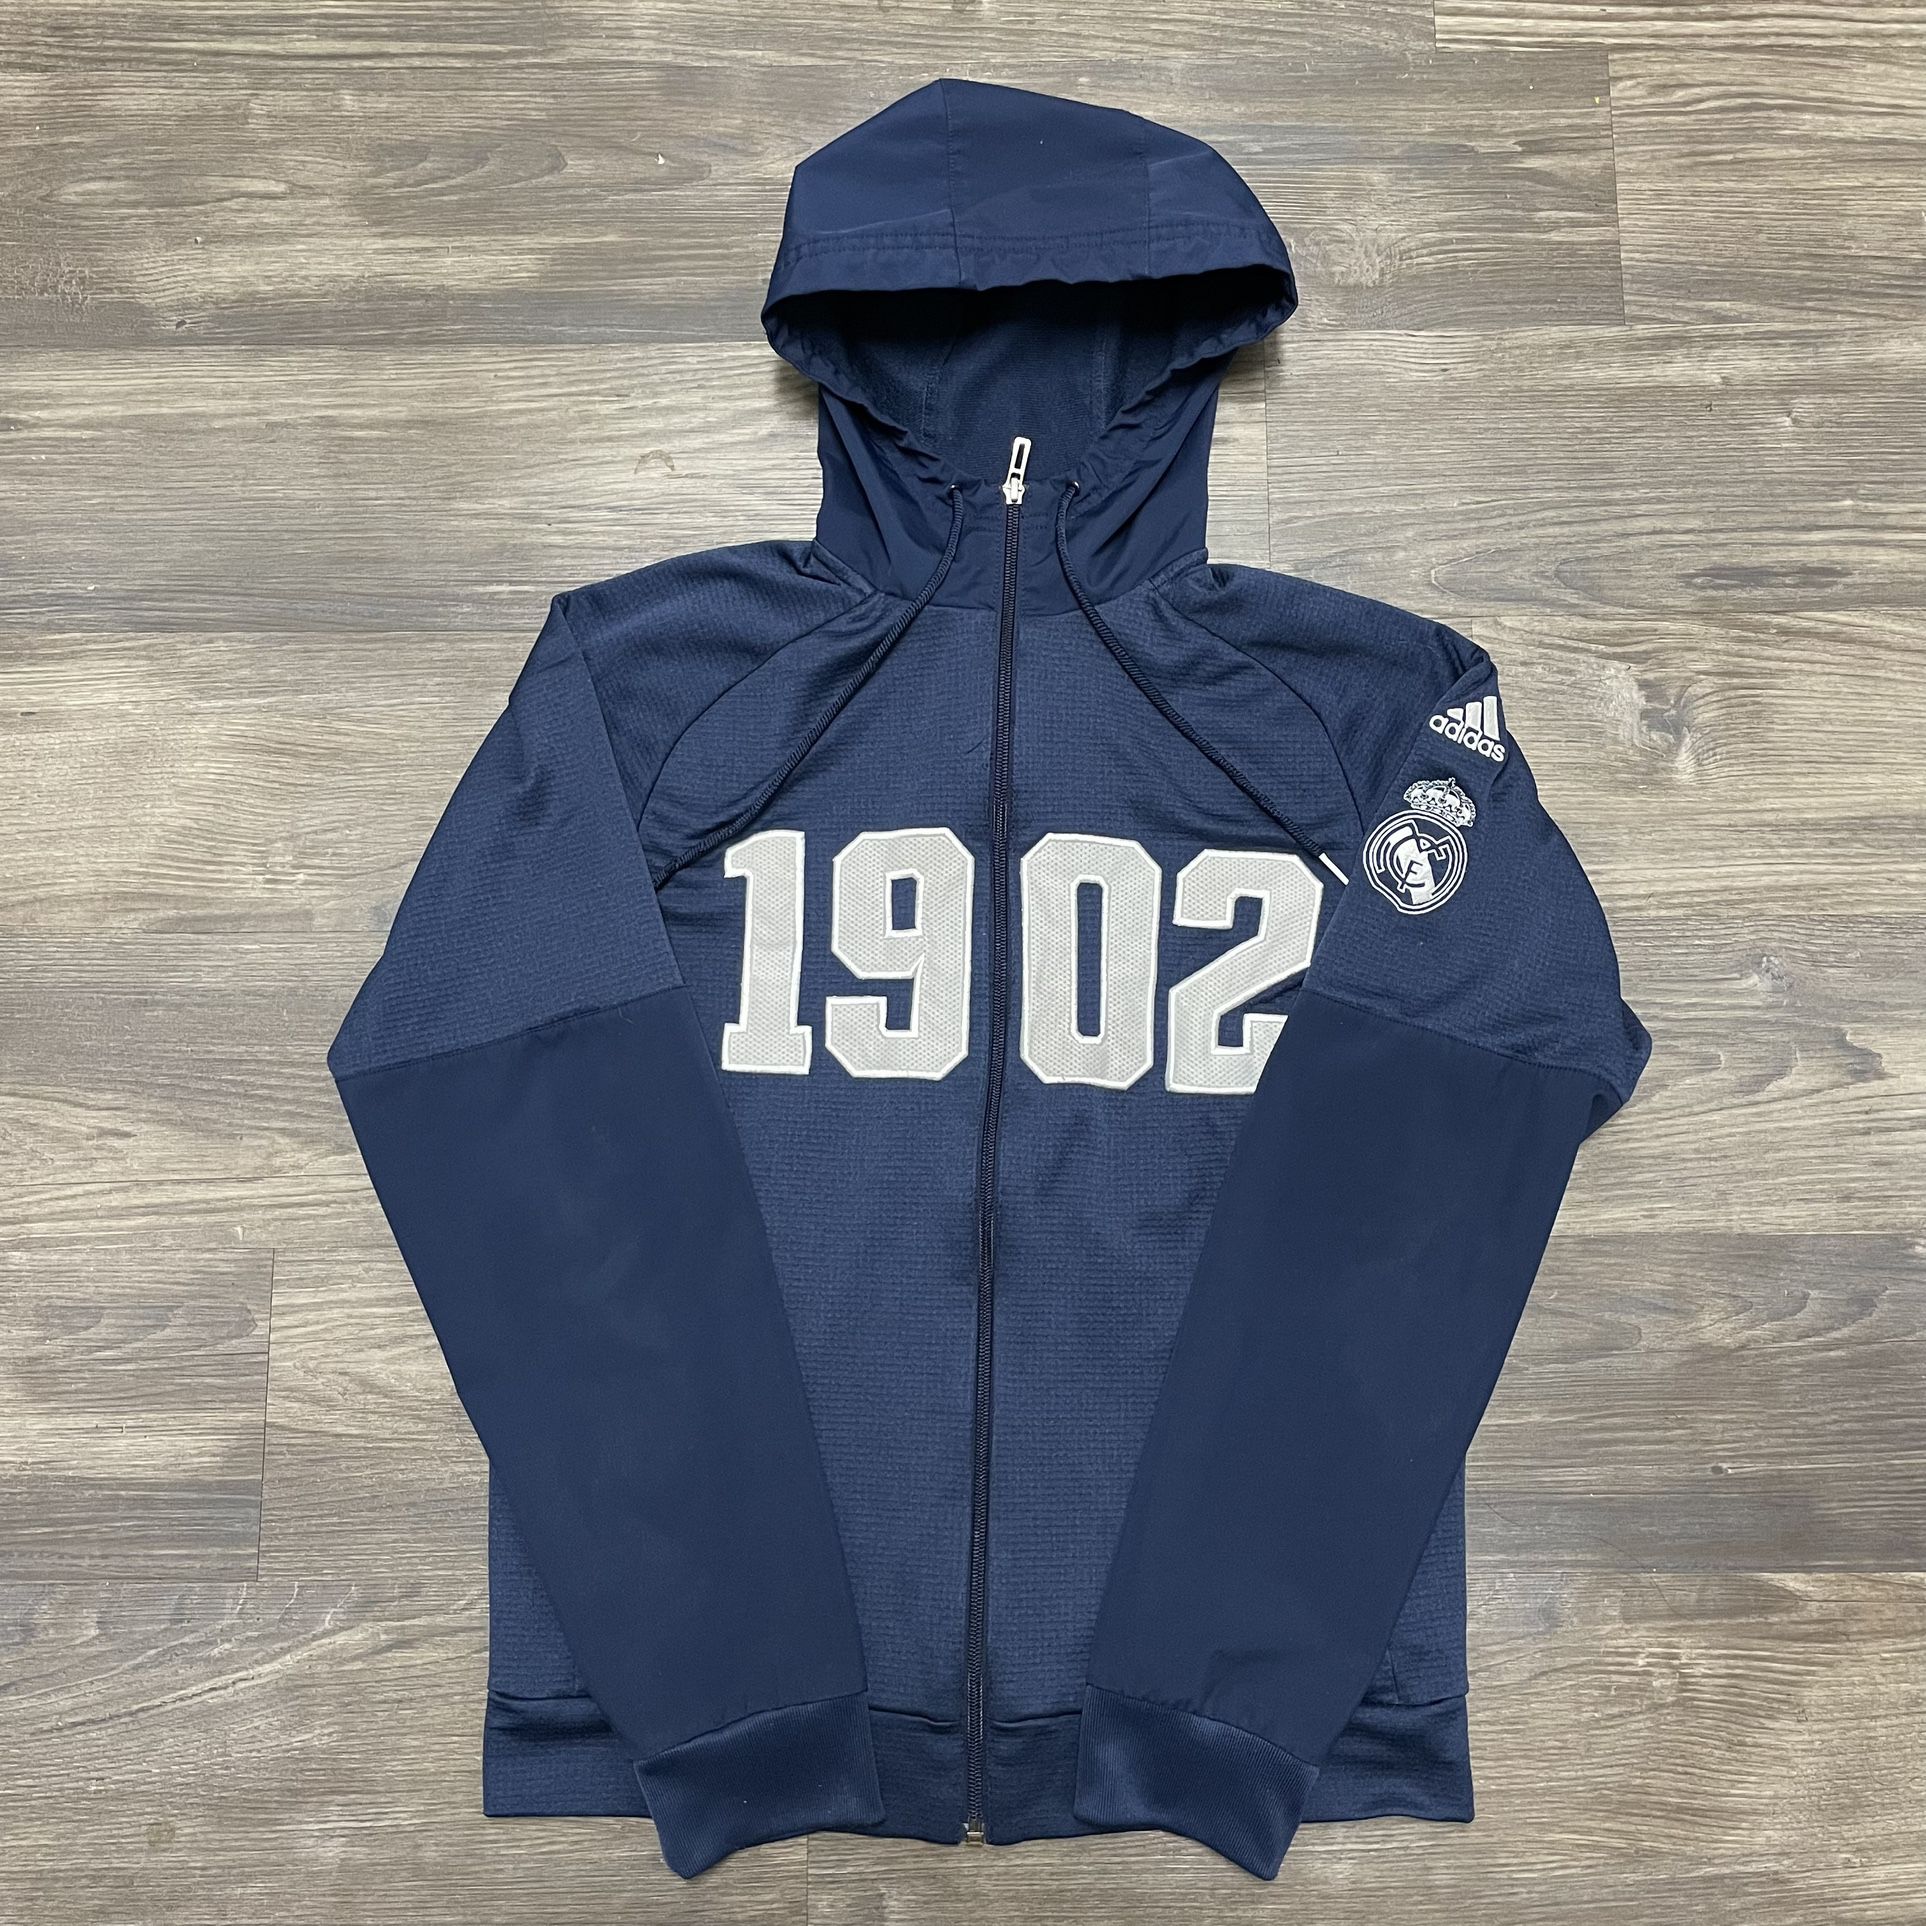 Adidas Real Madrid 1902 Men’s Full Zip Jacket Hoodie Size S